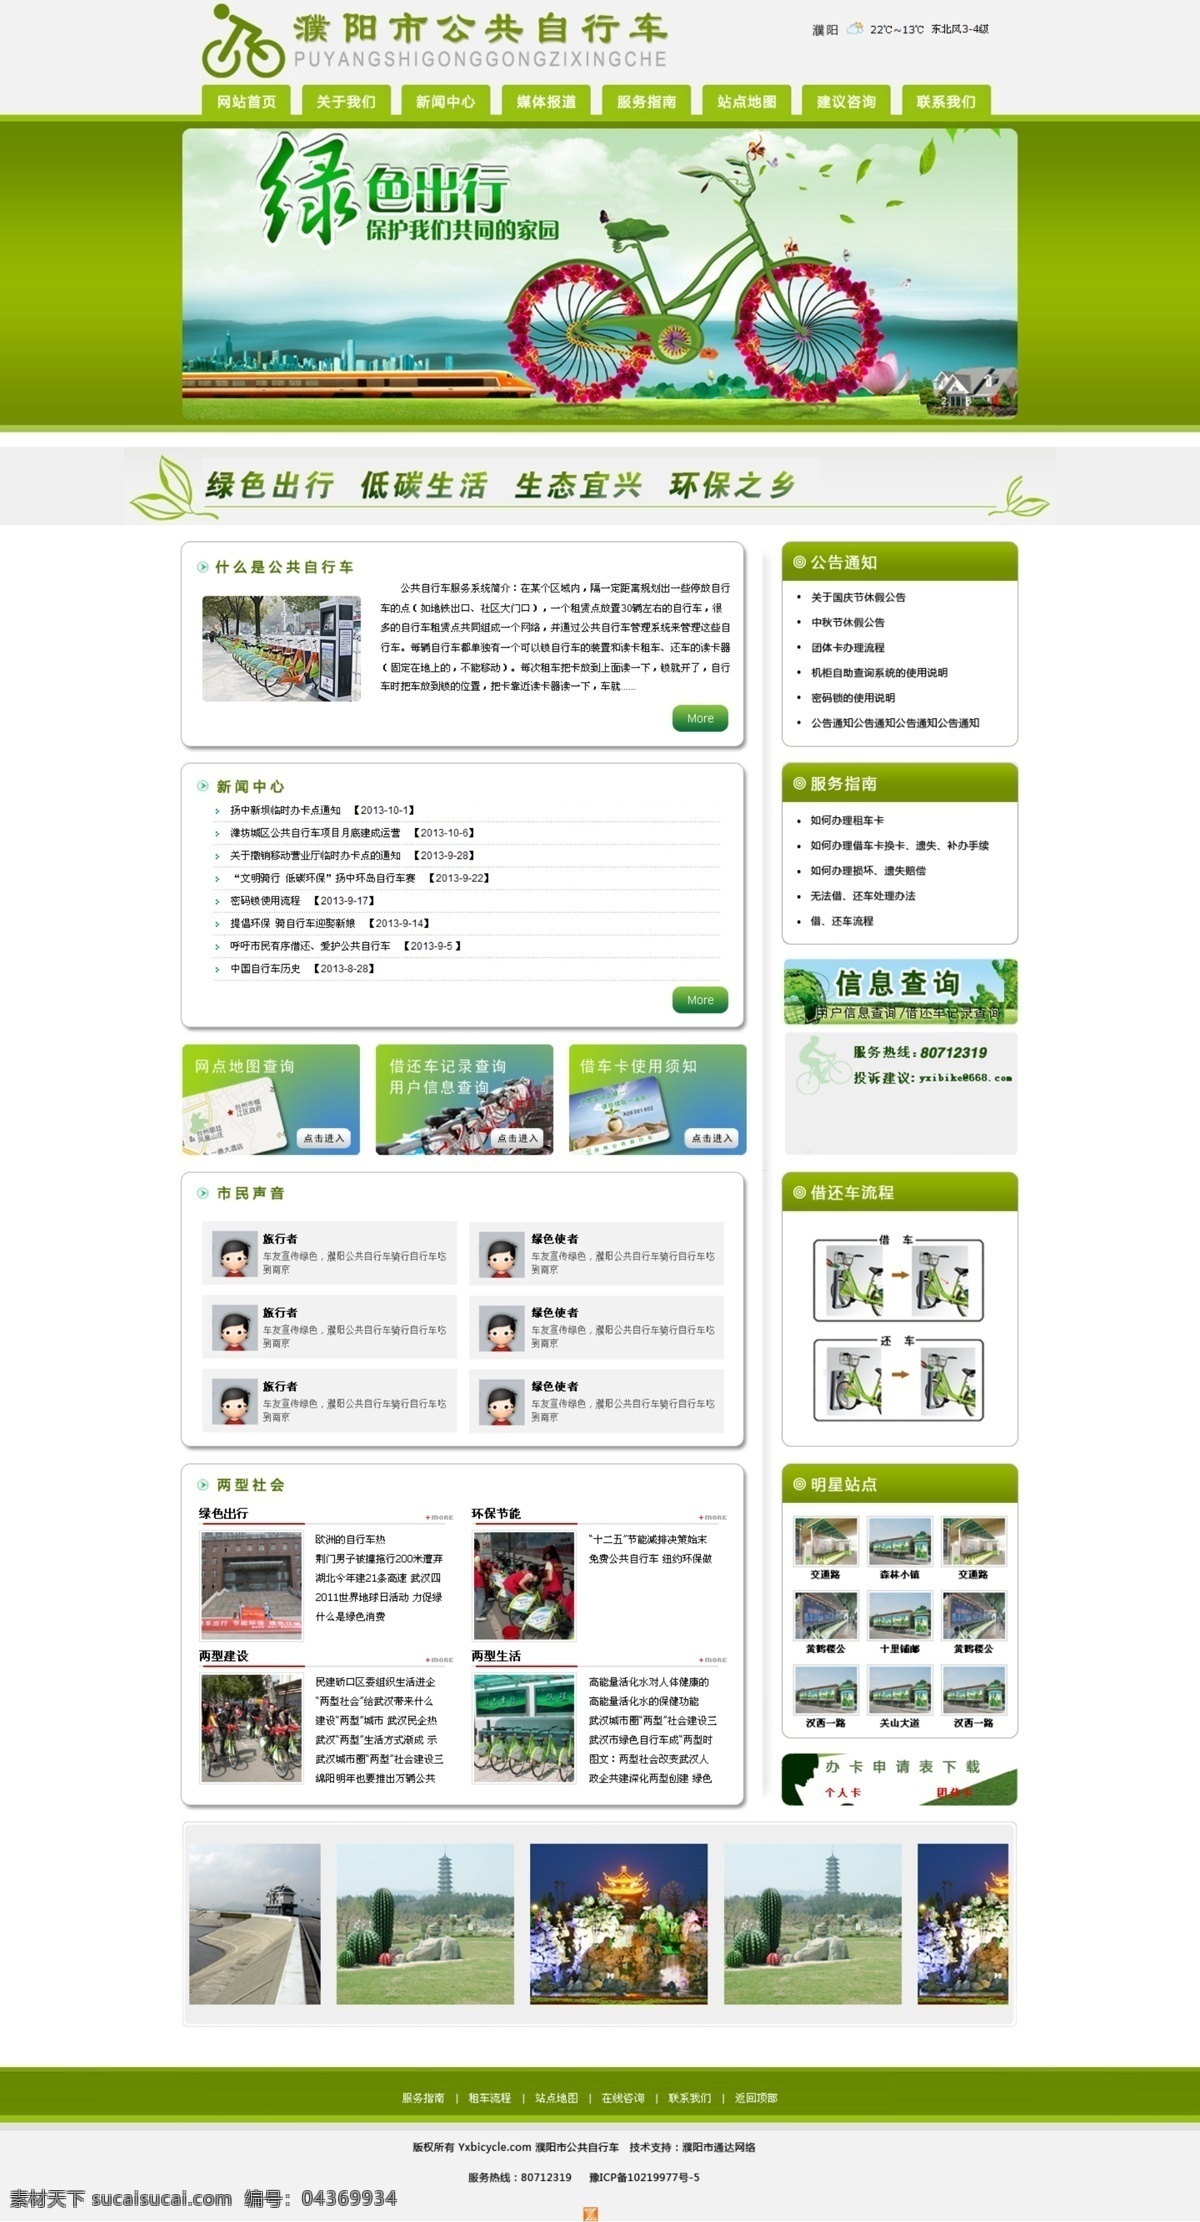 绿色 出行 自行车 网页 模版 设计图 网页模版 白色